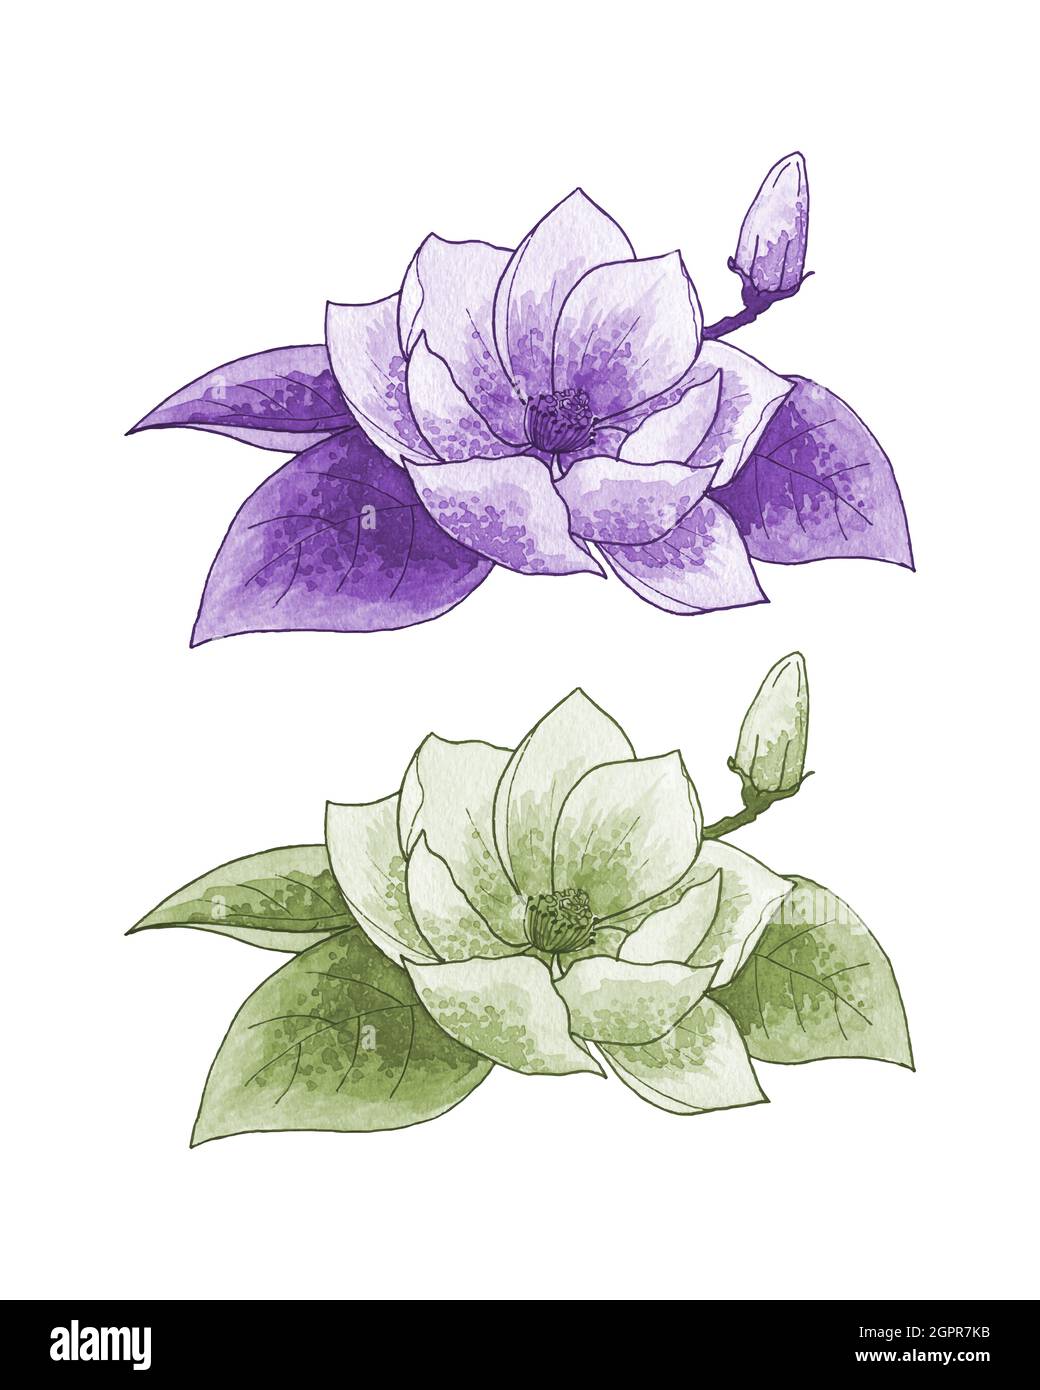 Ensemble de lys lotus, monochrome, contour, aquarelle stylisée dessin à la main, isolé, fond blanc. Illustration vectorielle Illustration de Vecteur